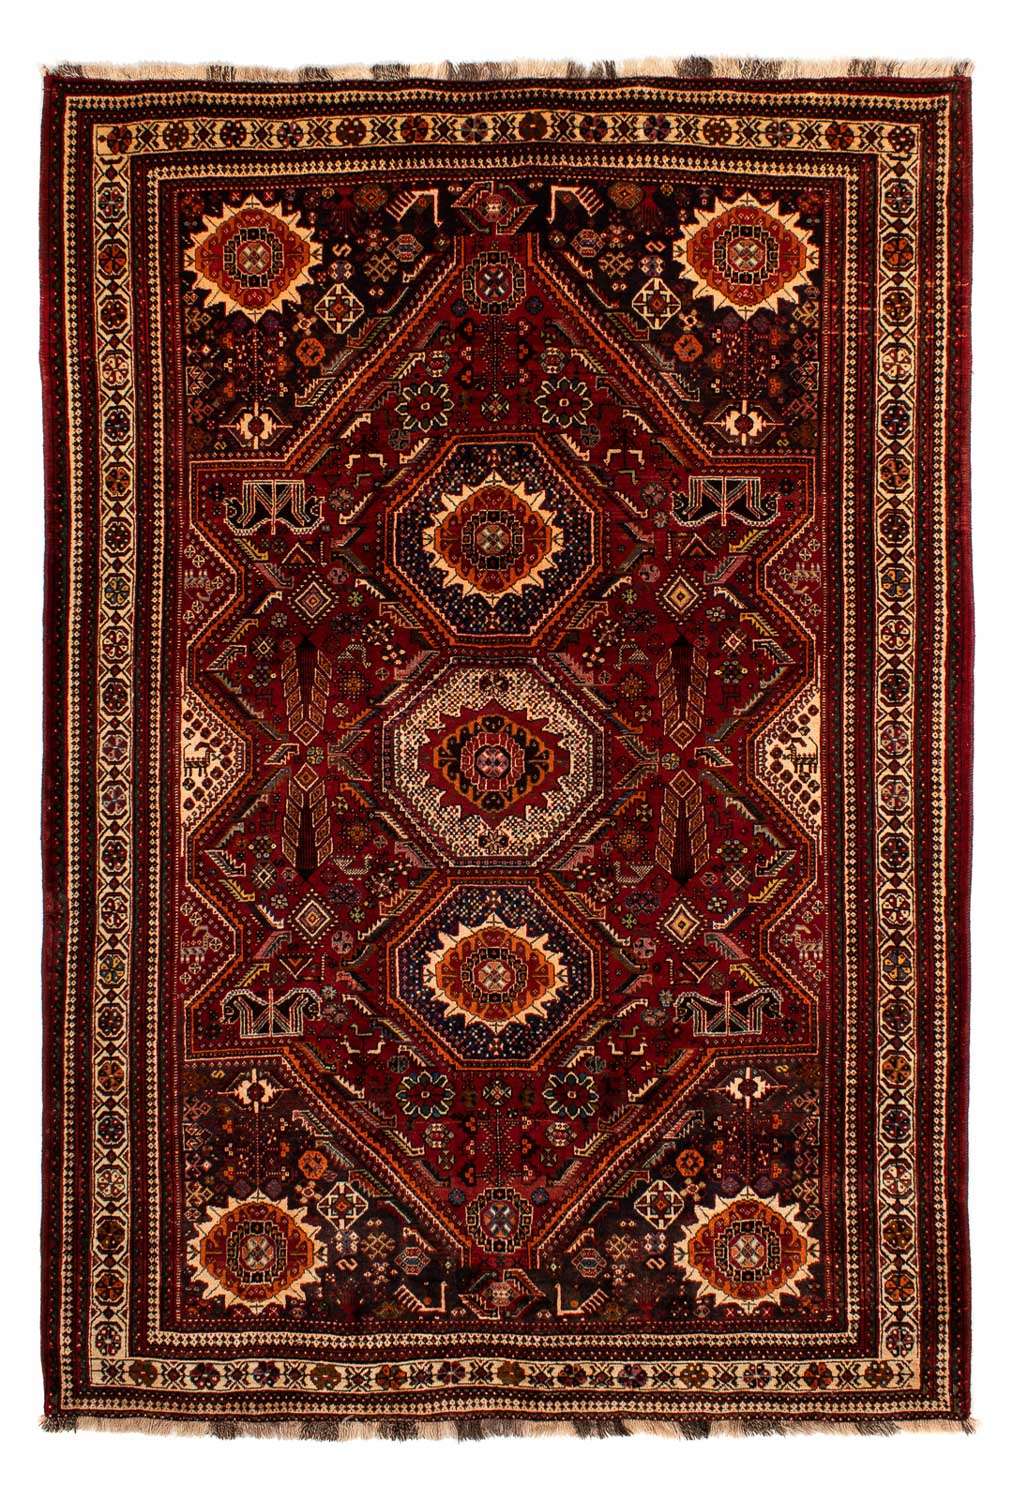 Tapete Persa - Nomadic - 310 x 210 cm - vermelho escuro